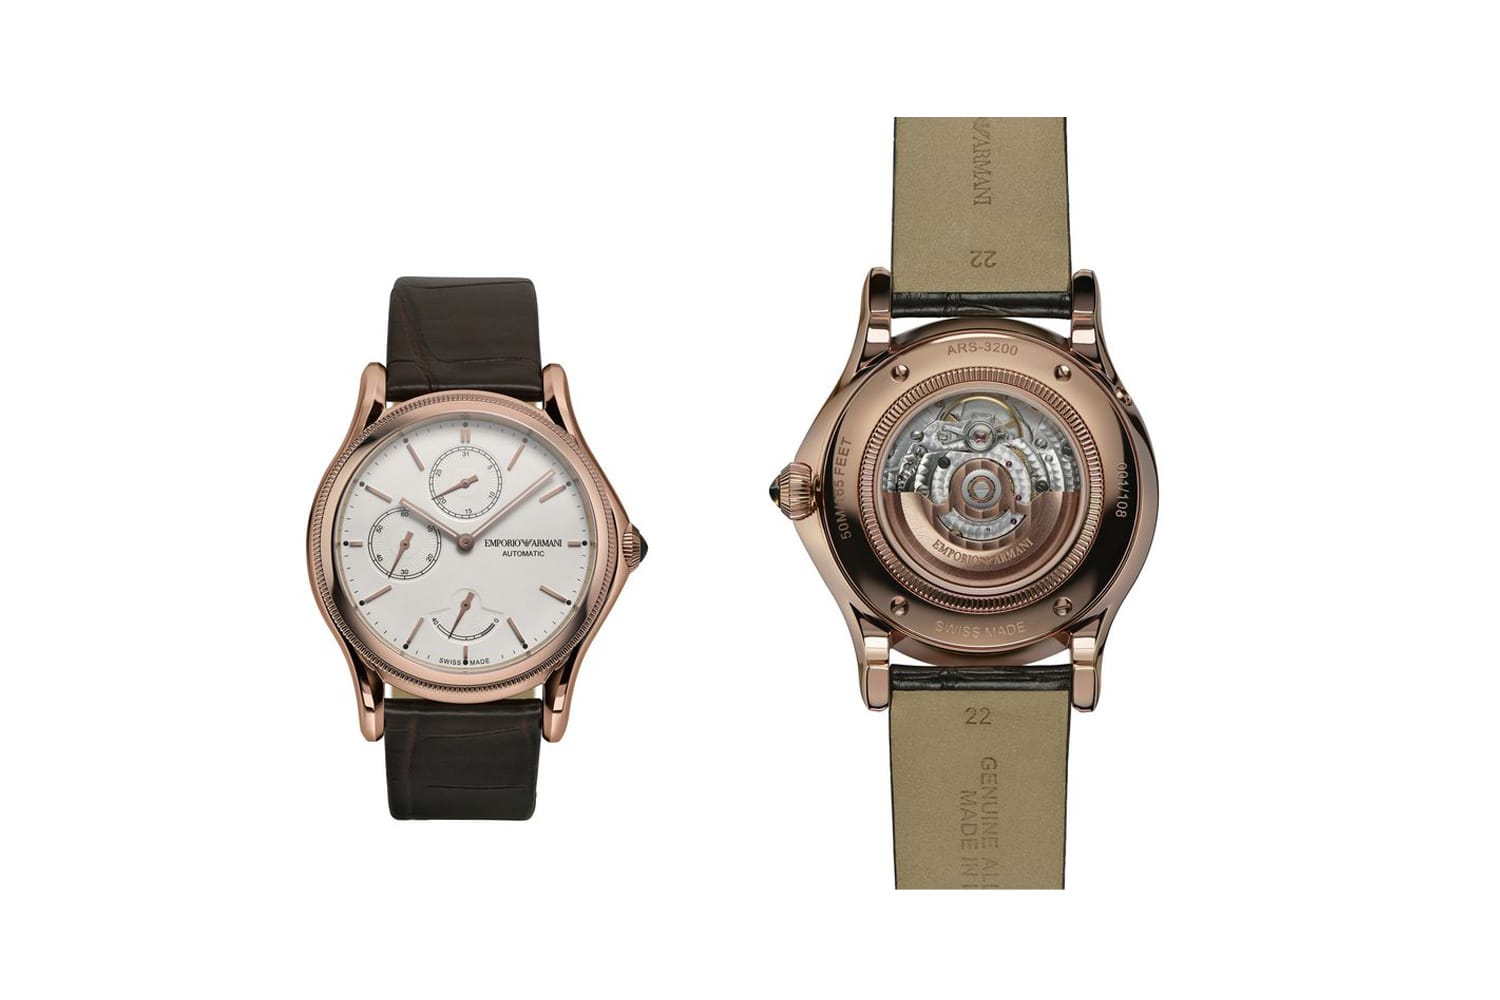 Die Bezeichnung "Swiss Made", wie bei dem gleichnamigen limitierten Modell von Armani (um 2150 Euro), steht ebenfalls für Schweizer Qualität. Die Uhr muss jedoch nicht vollständig aus der Schweiz stammen.